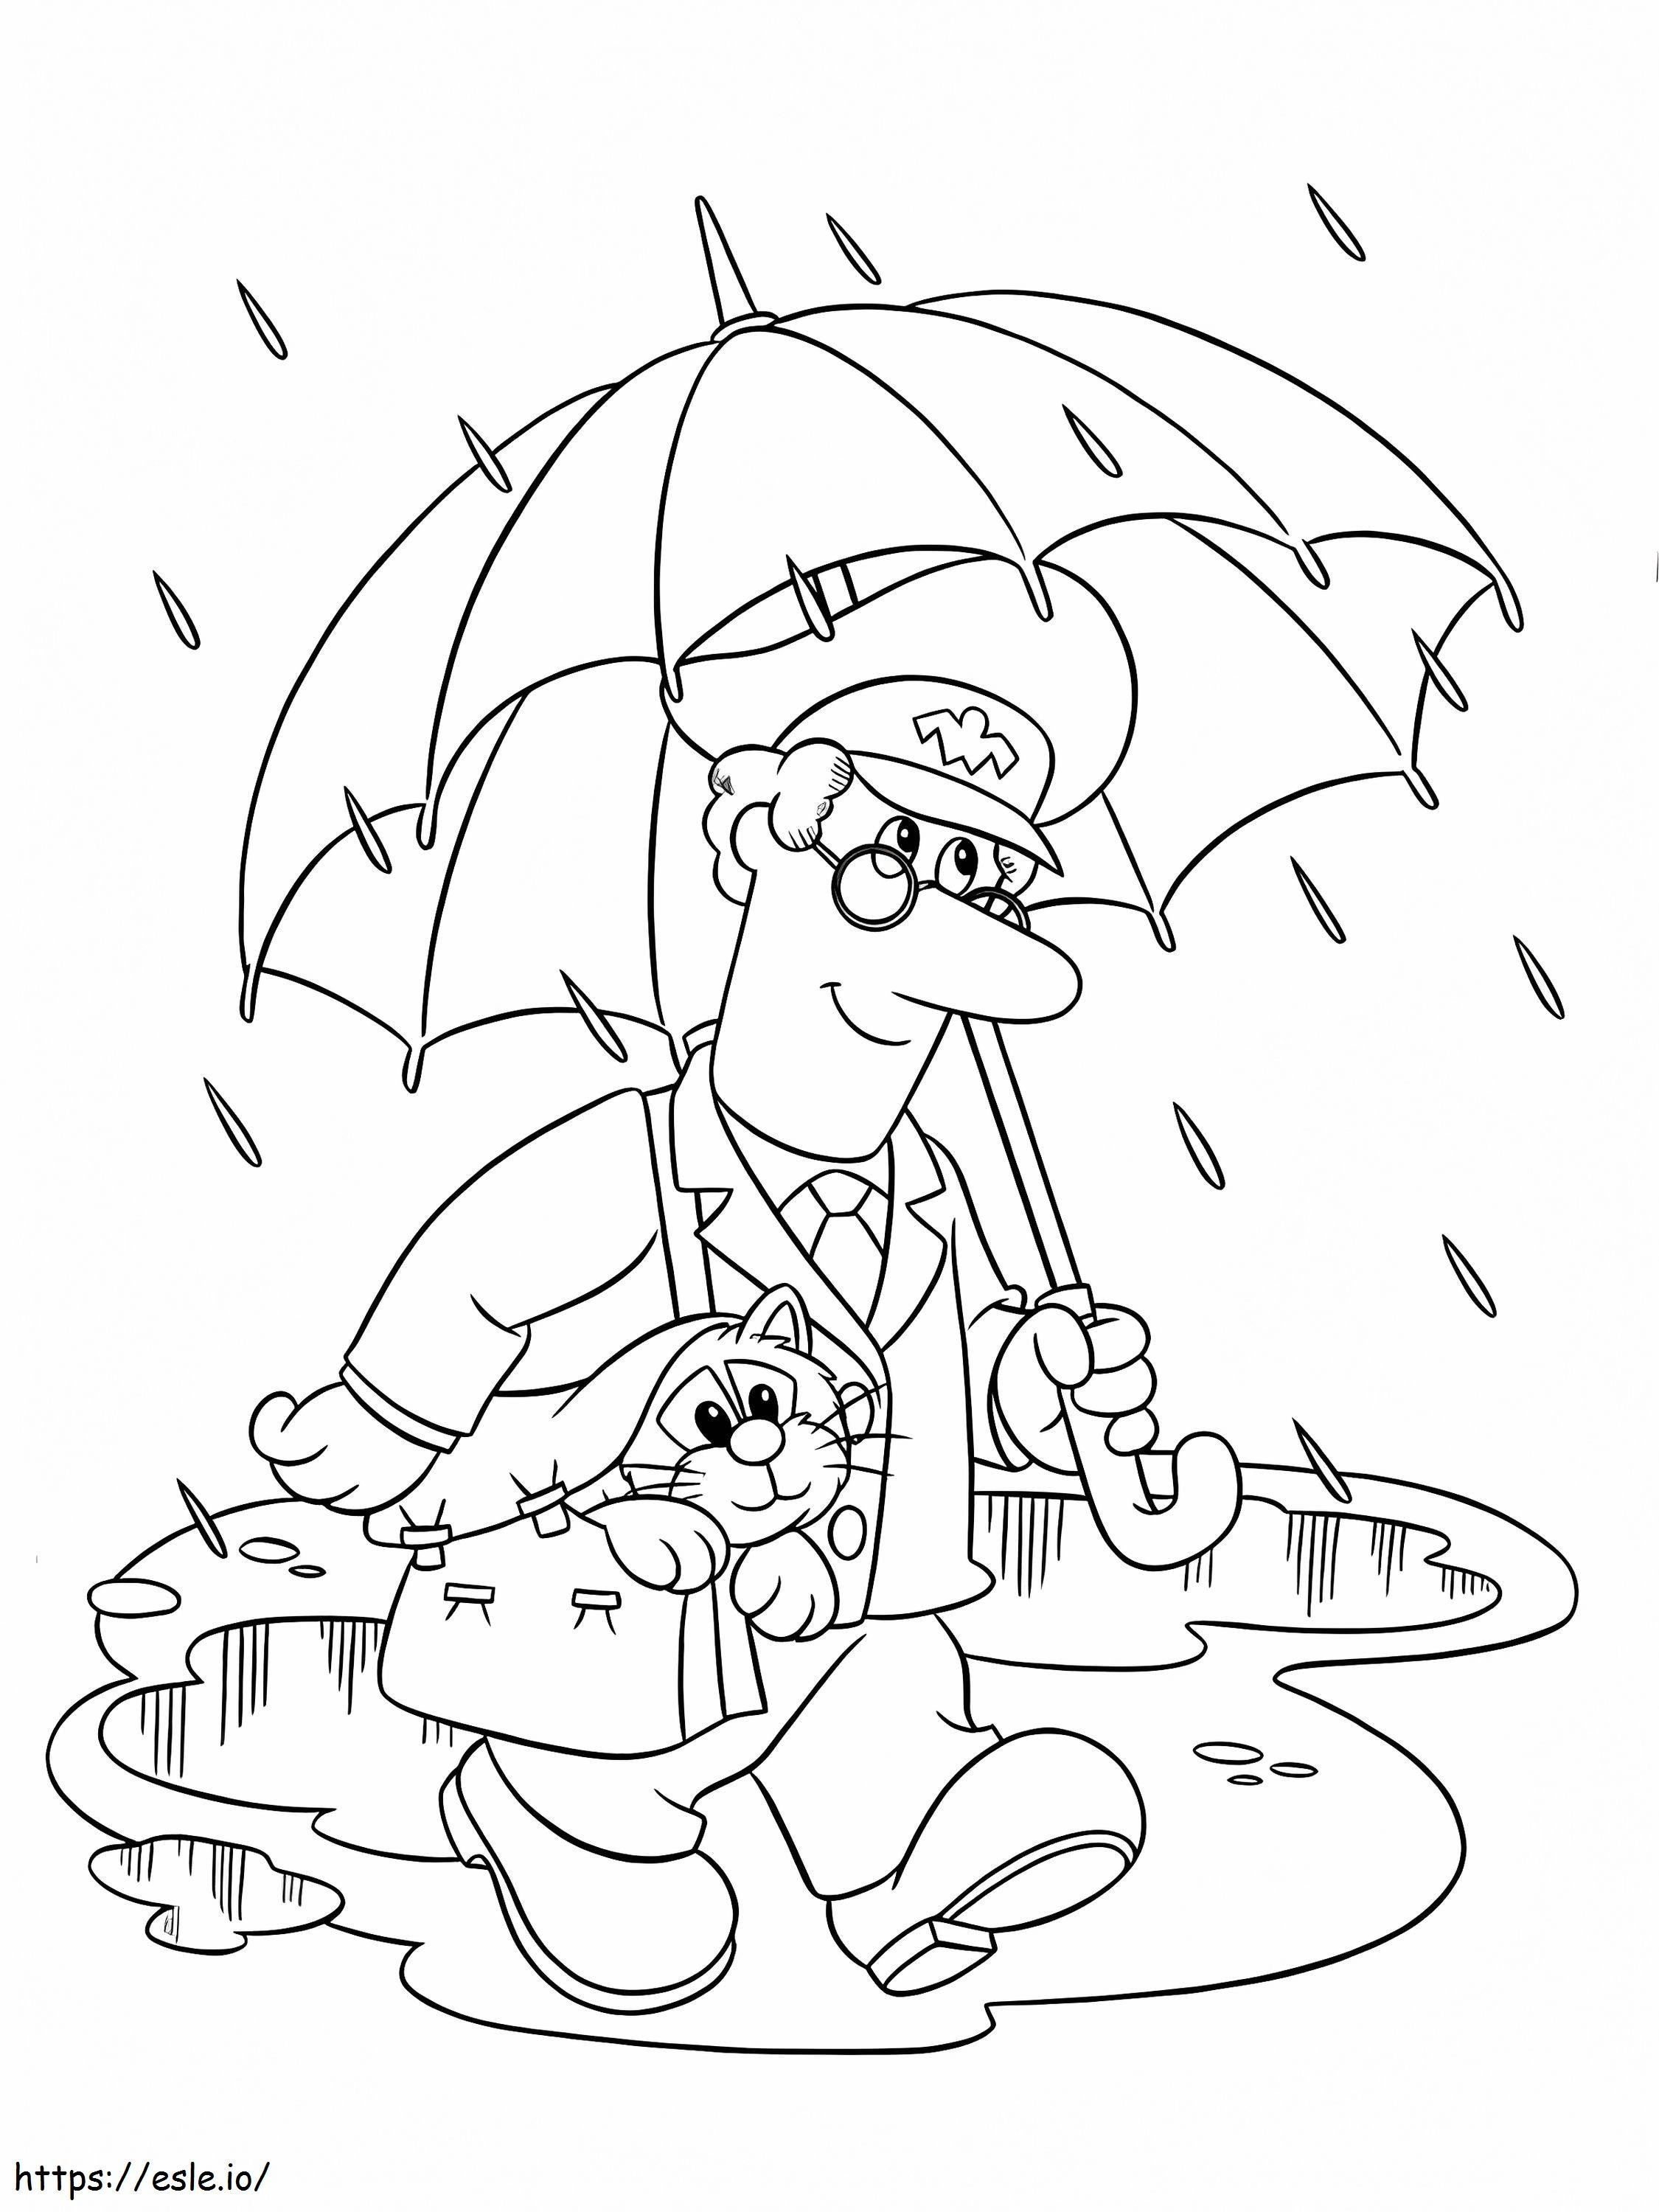 Pat, o carteiro, e seu gato andando na chuva para colorir